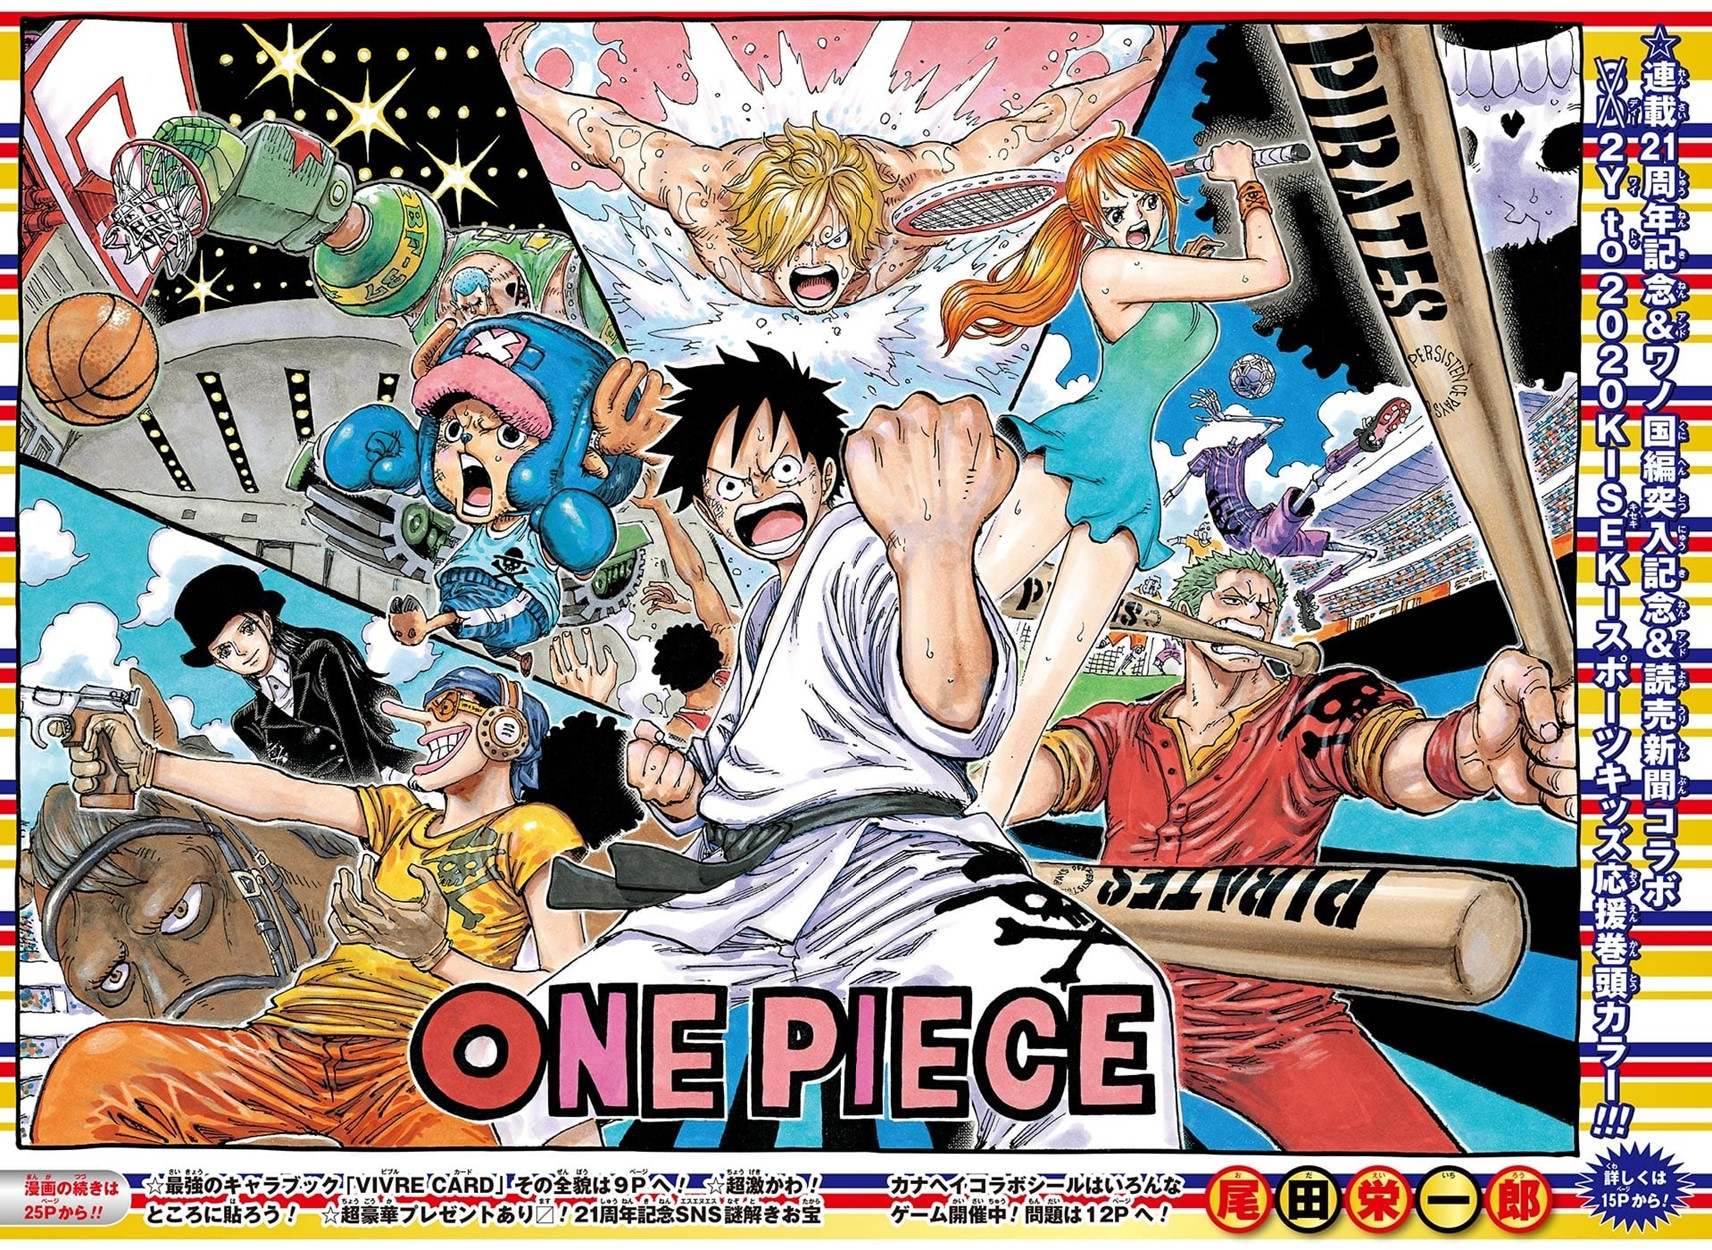 Rozdzial 912 One Piece Wiki Fandom